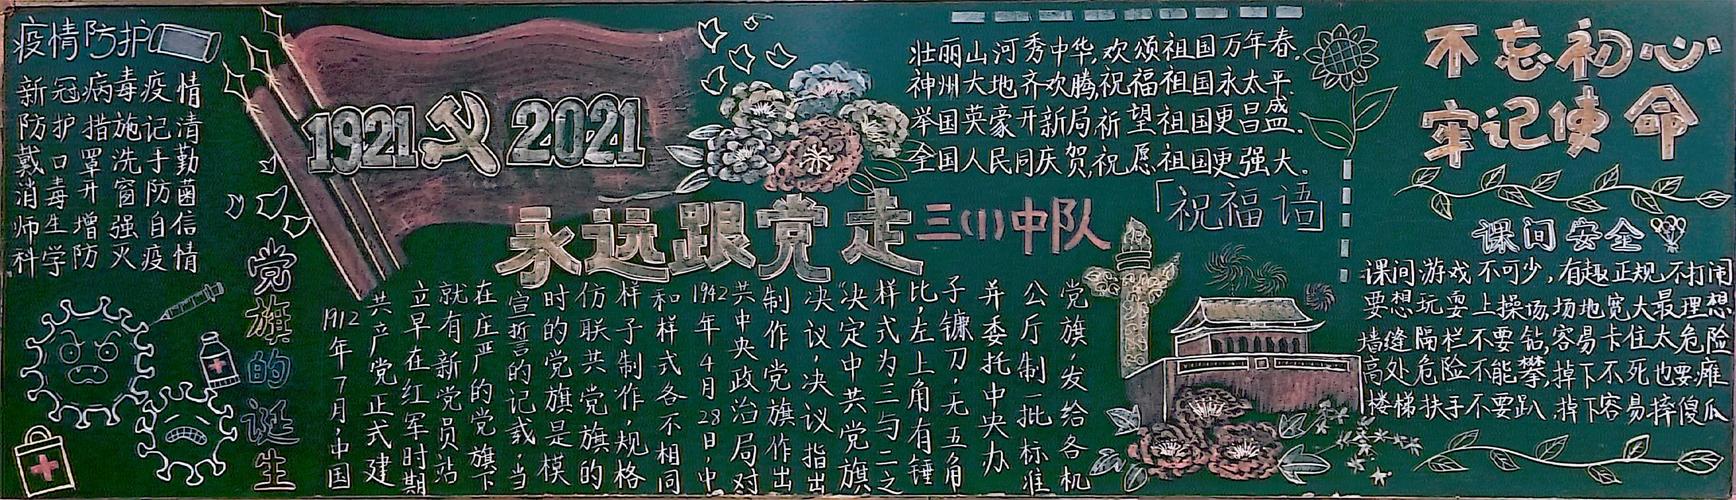 队旗跟党走争做新时代接班人---徐州市西朱小学庆建党100周年黑板报